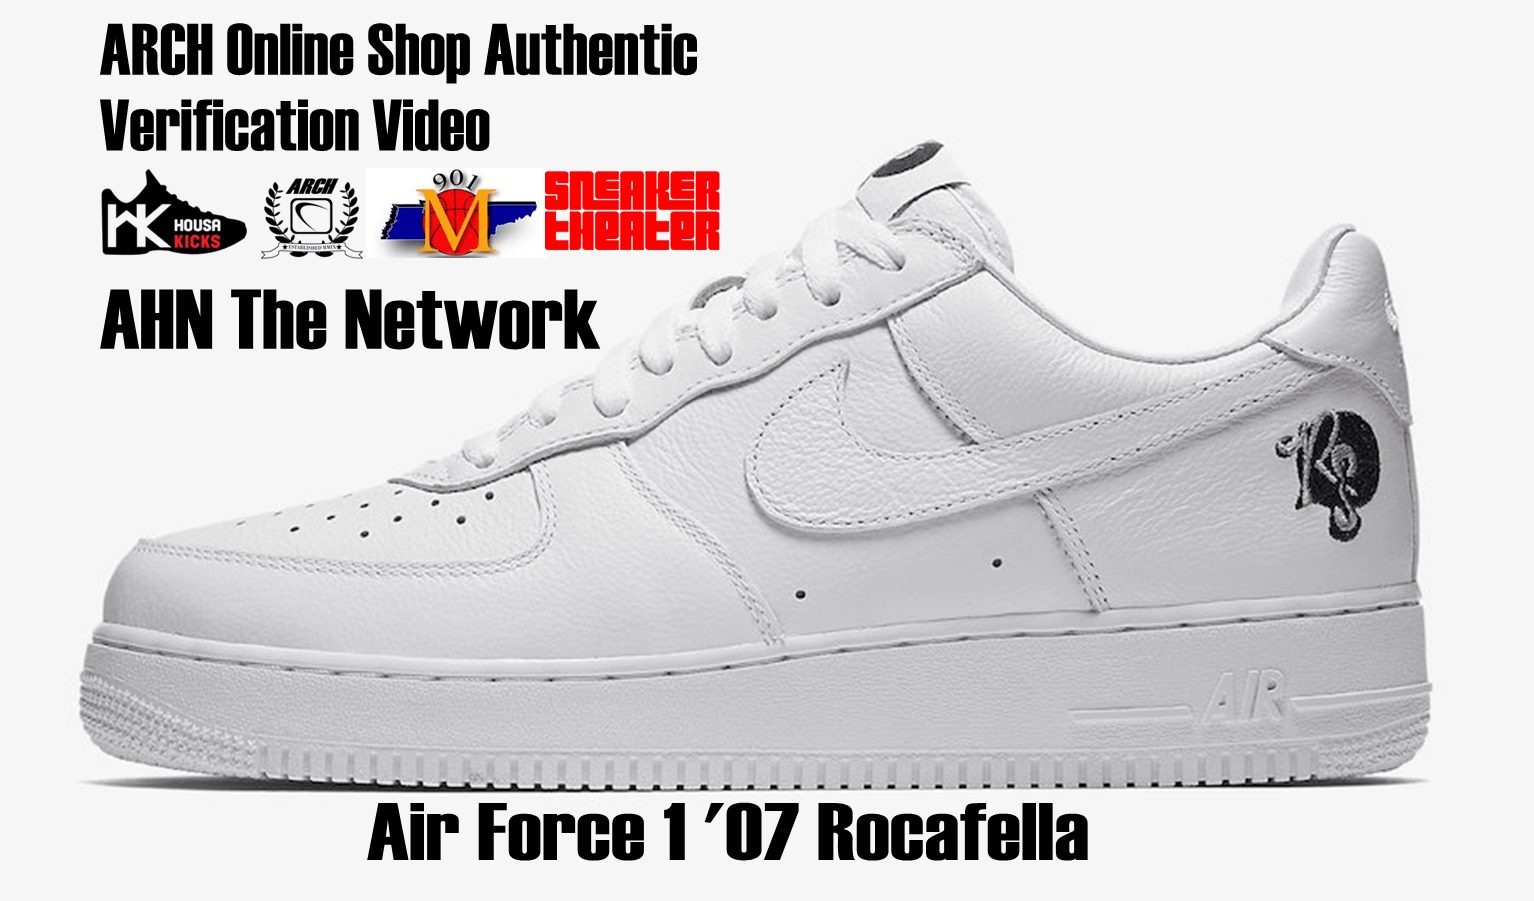 nike air force 1 low fake vs real